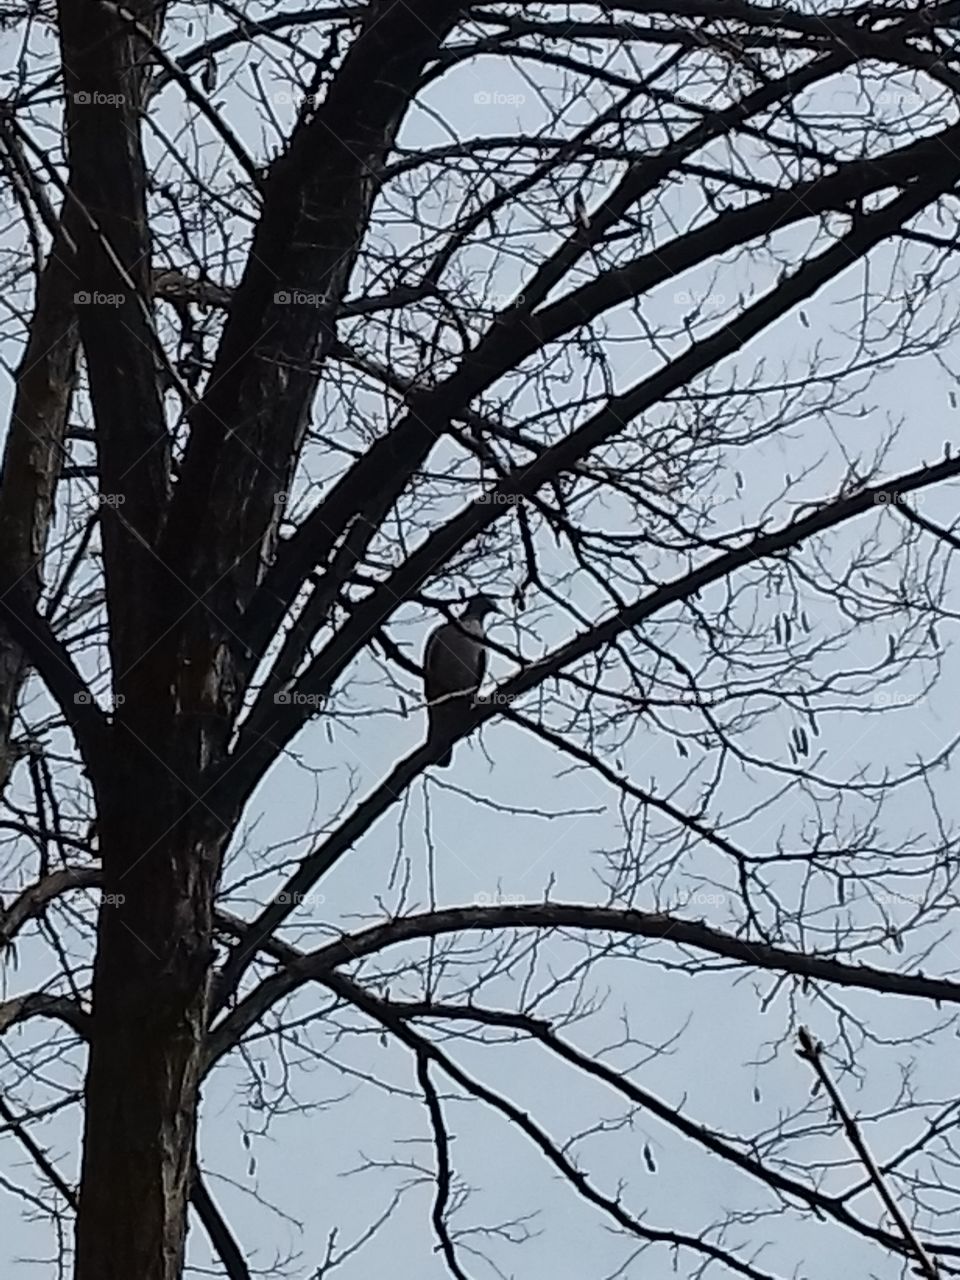 bird on tree